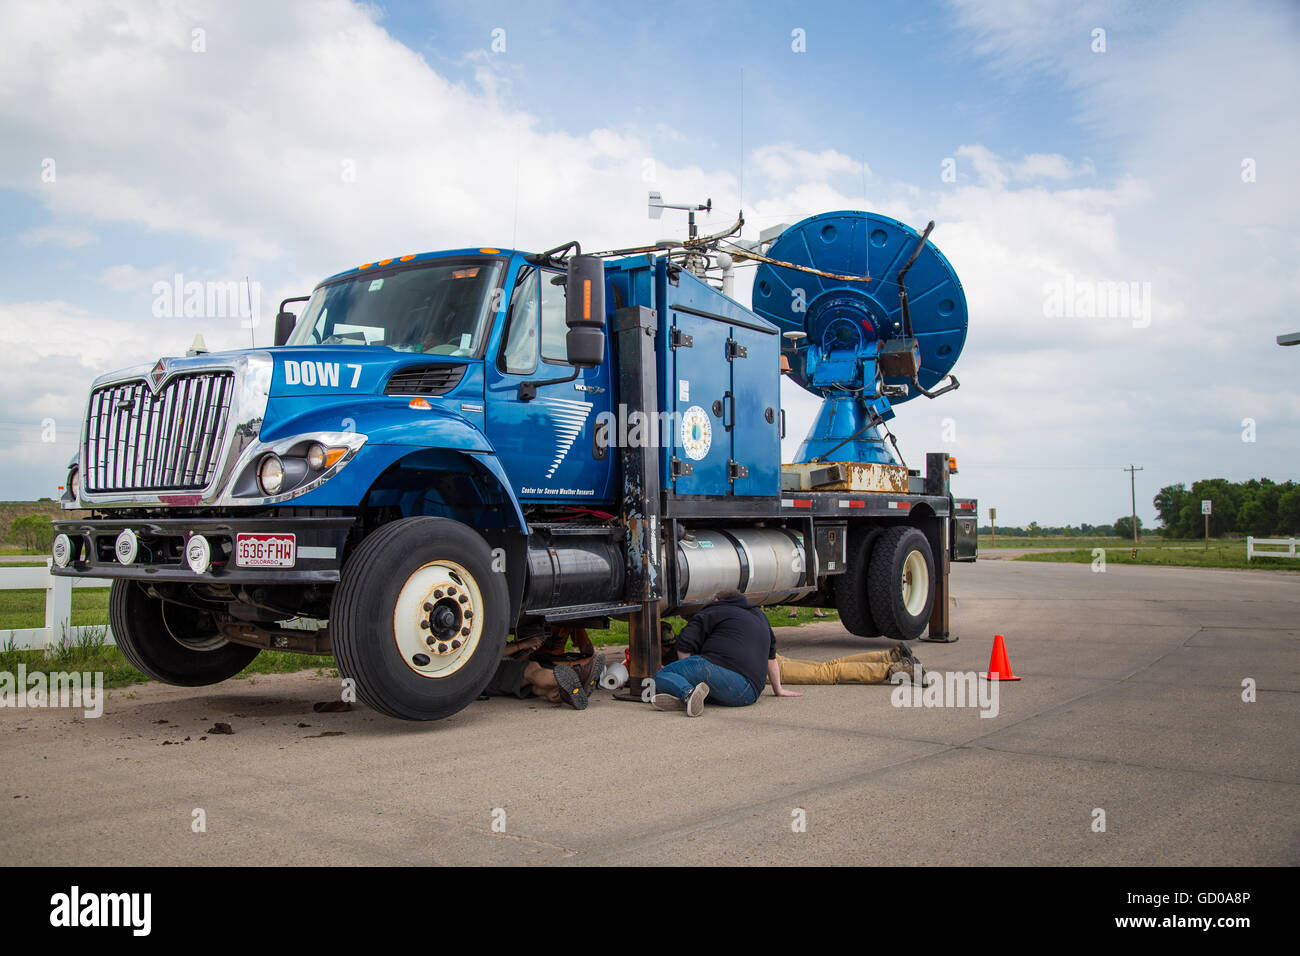 Un Doppler su ruote carrello progettato per la scansione di tornado con radar Doppler viene sottoposta a manutenzione in Ansley, Nebraska, Giugno 3, 2014. Foto Stock